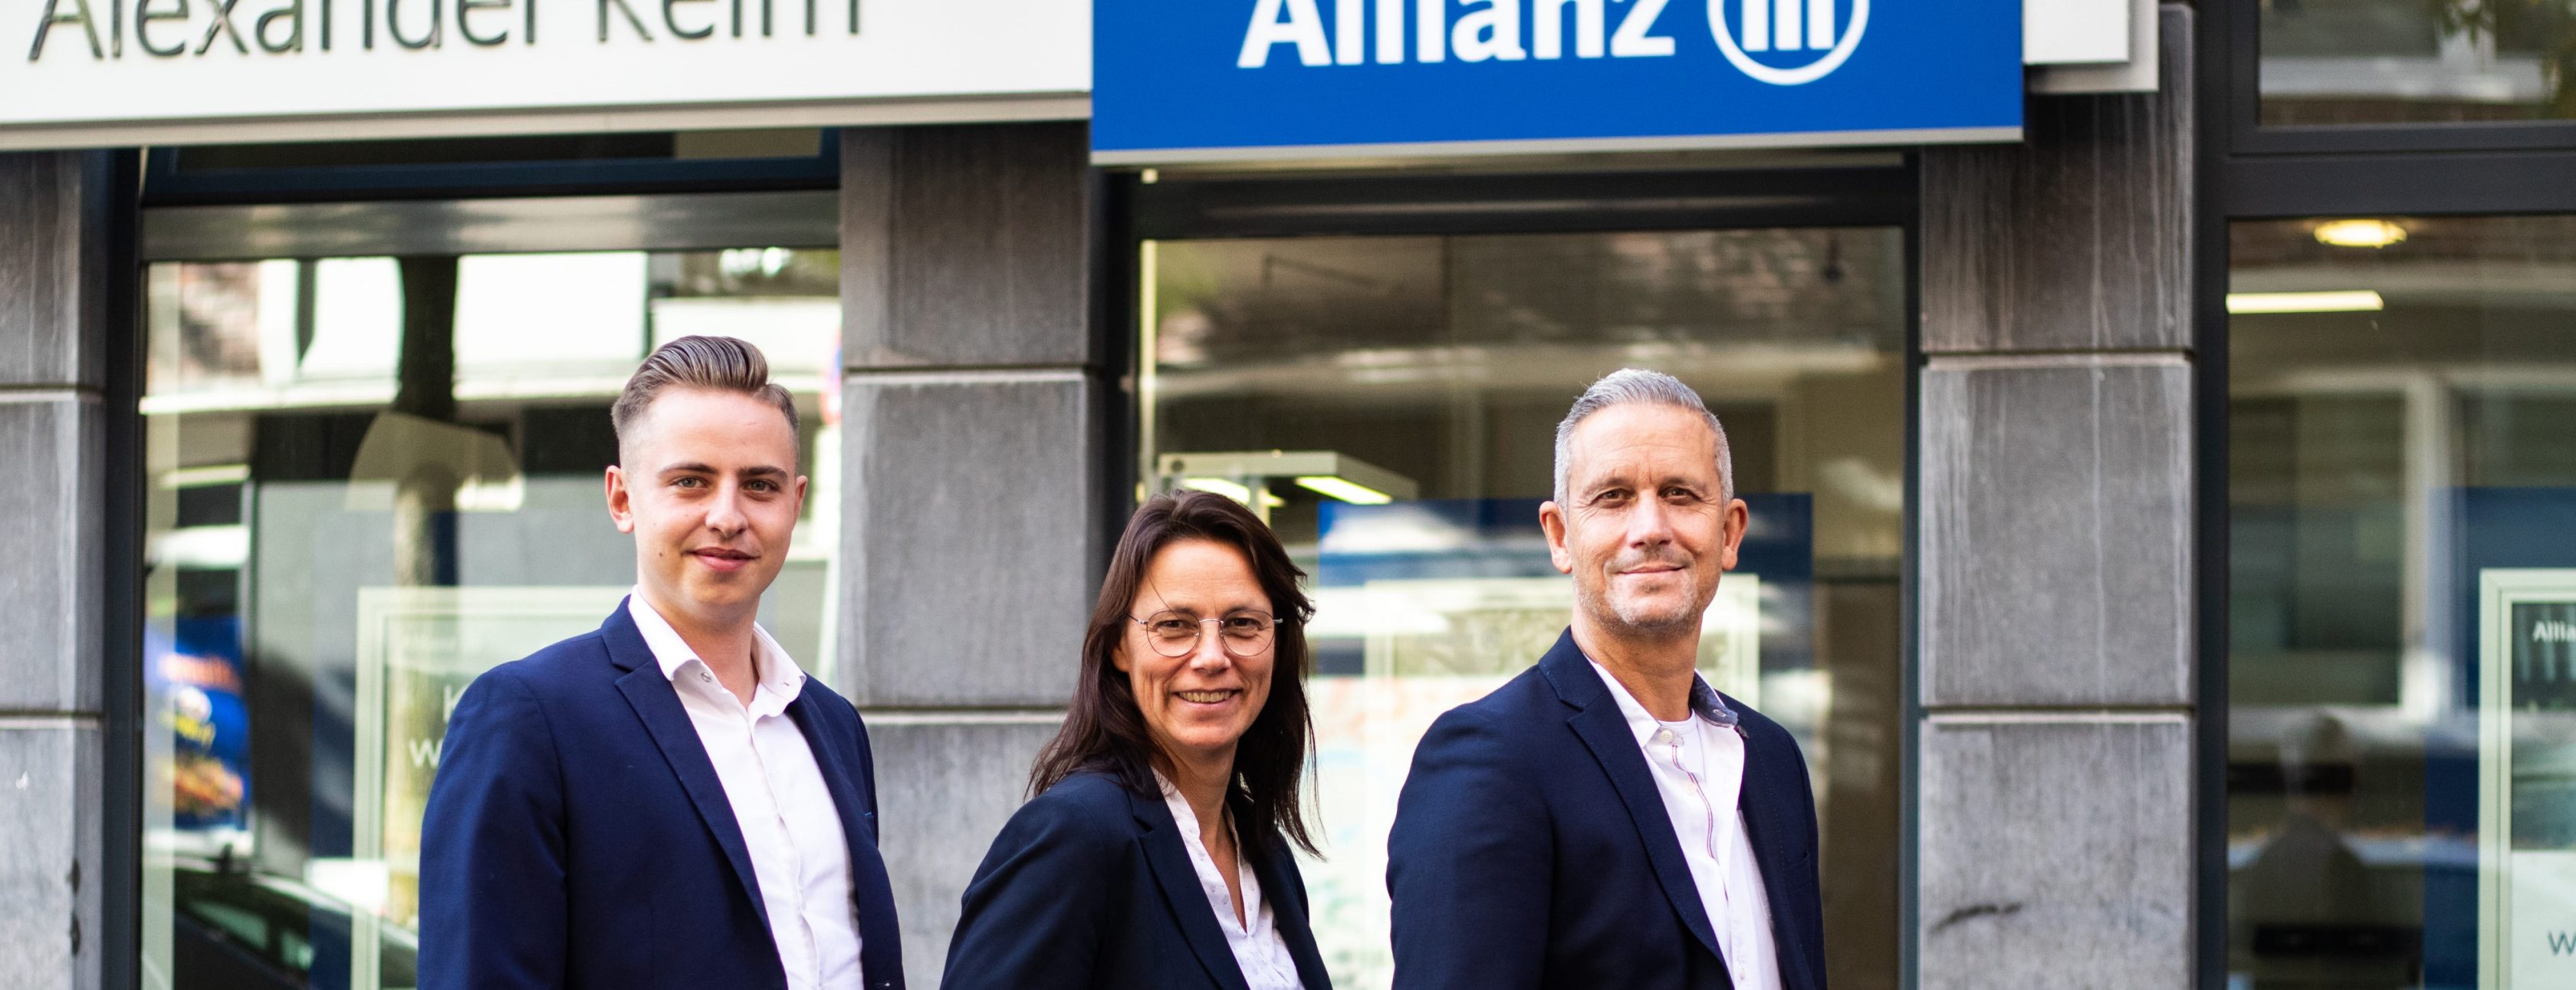 Allianz Versicherung Alexander Reim Aachen - Agenturbild